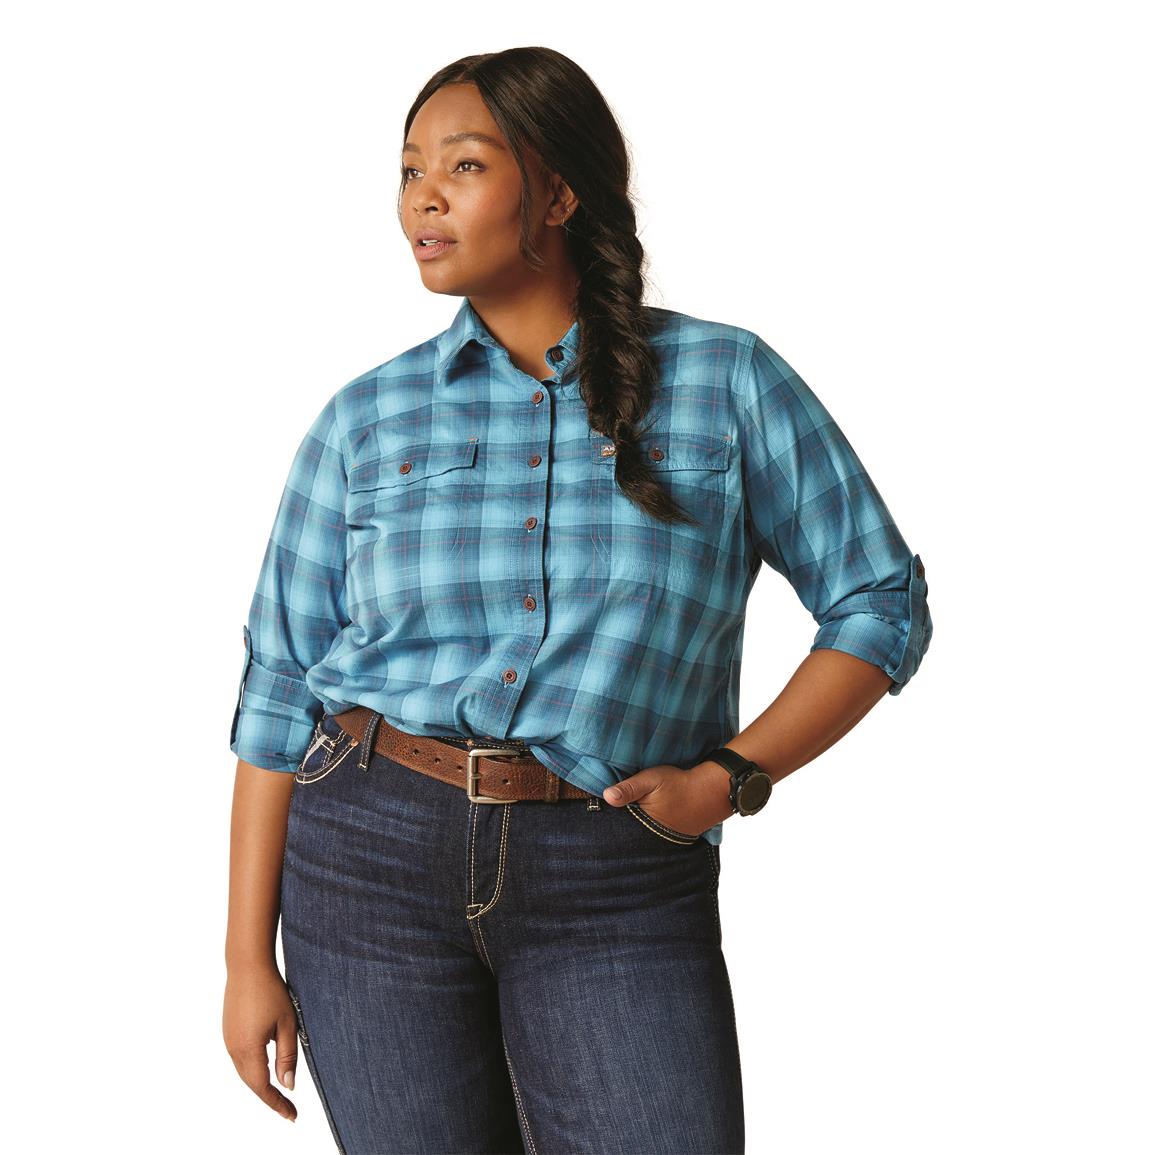 Ariat Women's Rebar Made Tough VentTEK Durastretch Long Sleeve Work Shirt, Prominent Blue Plaid